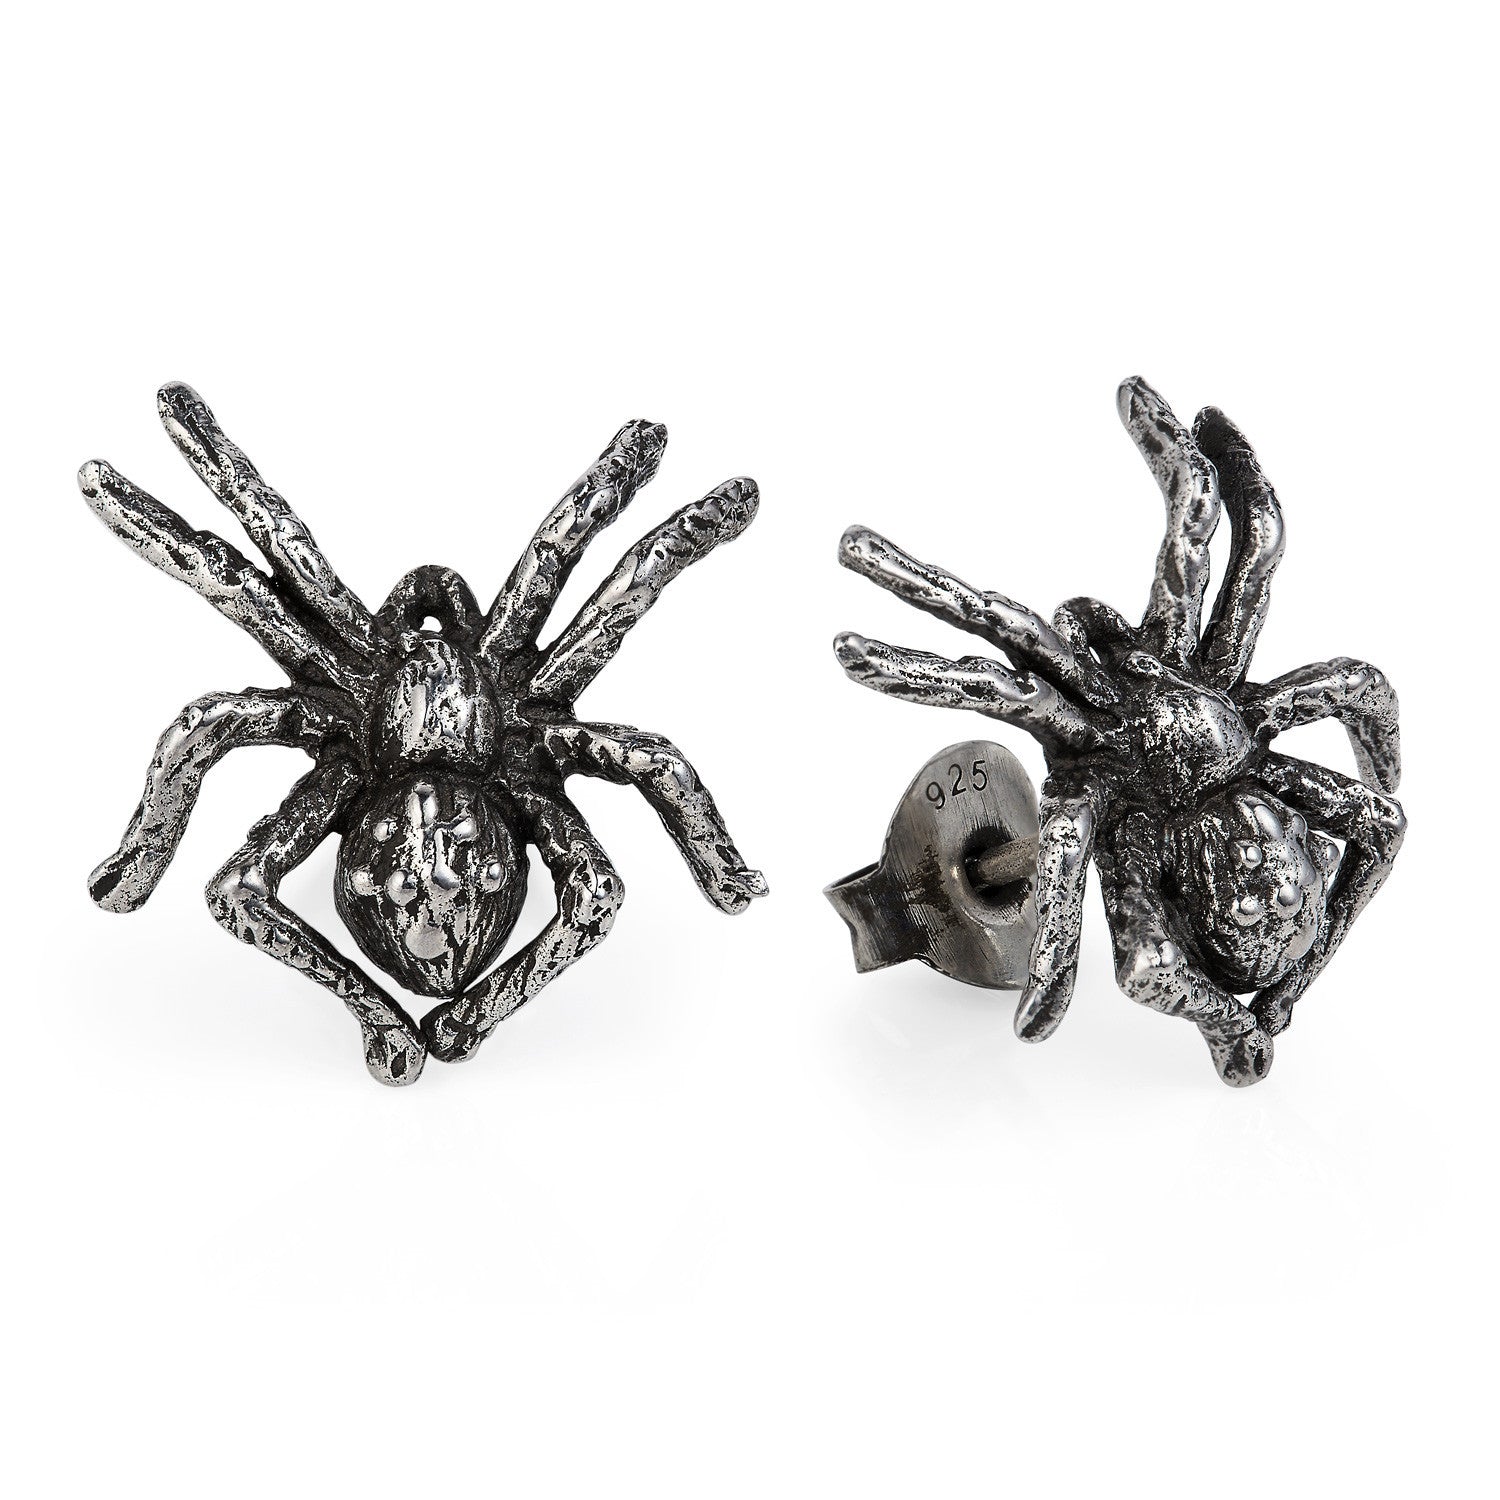 Little Spider Stud Earrings by Yasmin Everley